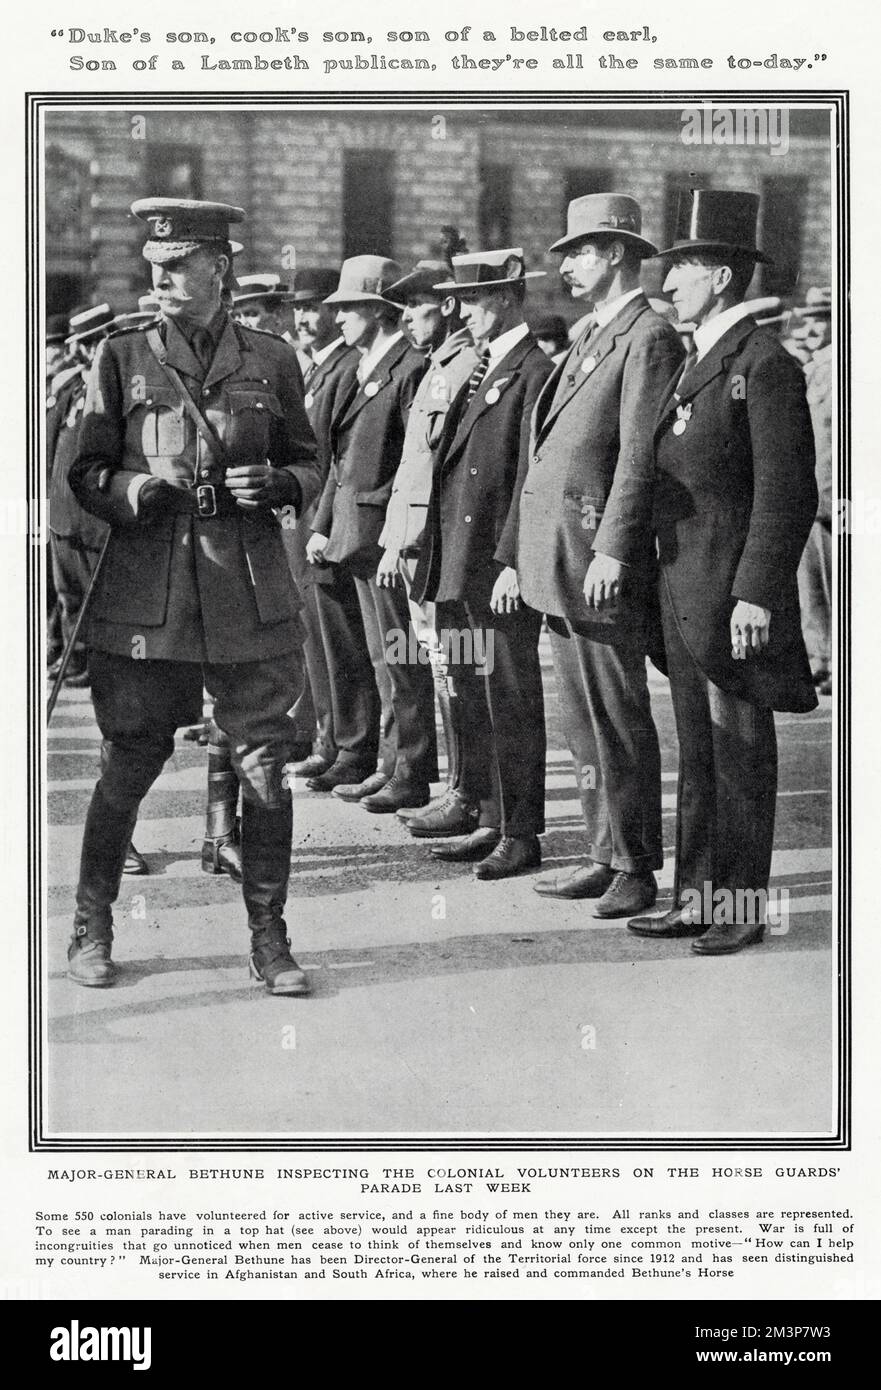 Le major-général Bethune inspecte des volontaires coloniaux lors de la parade des gardes à cheval portant leurs vêtements civils, y compris, à une extrémité, un homme dans le chapeau et les queues. Le major-général Bethune était Directeur général de la Force territoriale depuis 1912. Banque D'Images